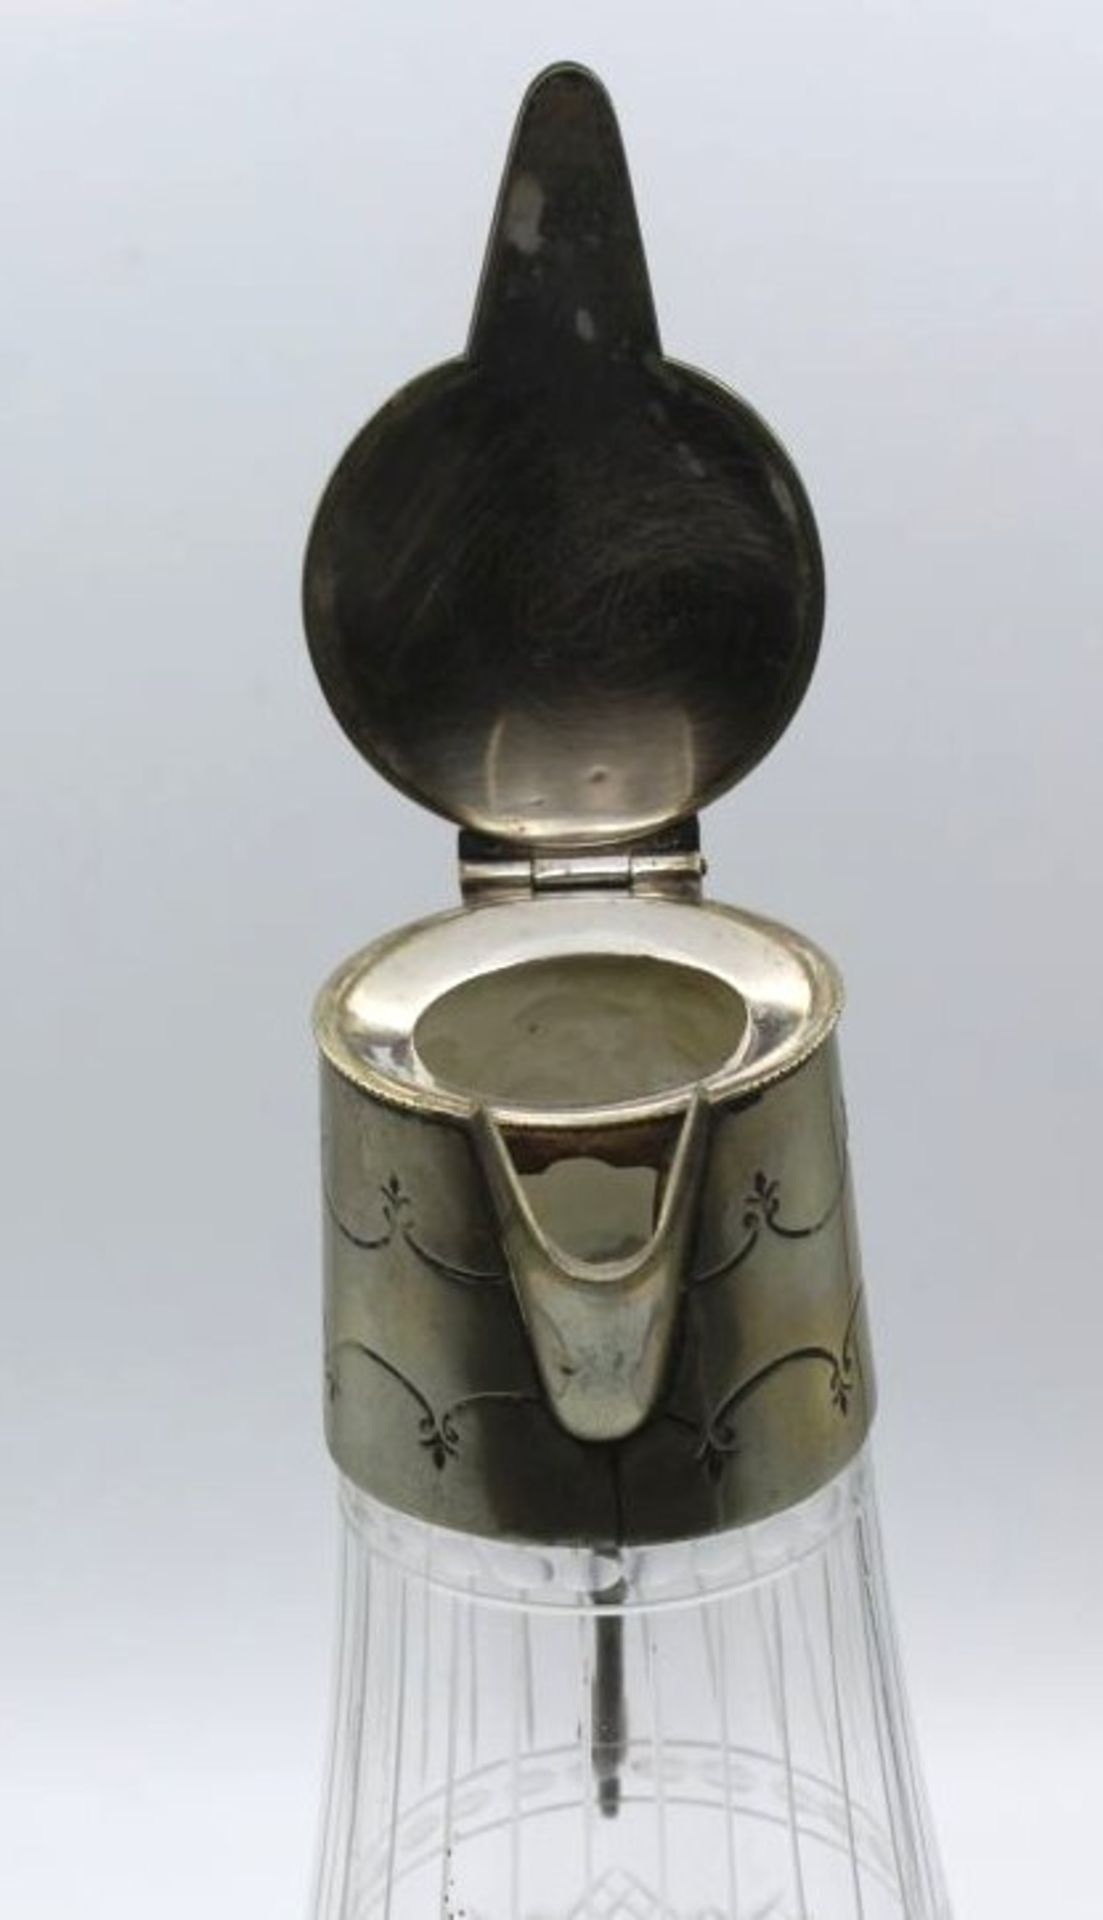 Kristall-Kraffe mit versilberter Montur, aufwendiger Schliff, älter, H-25cm.- - -22.61 % buyer's - Bild 4 aus 4